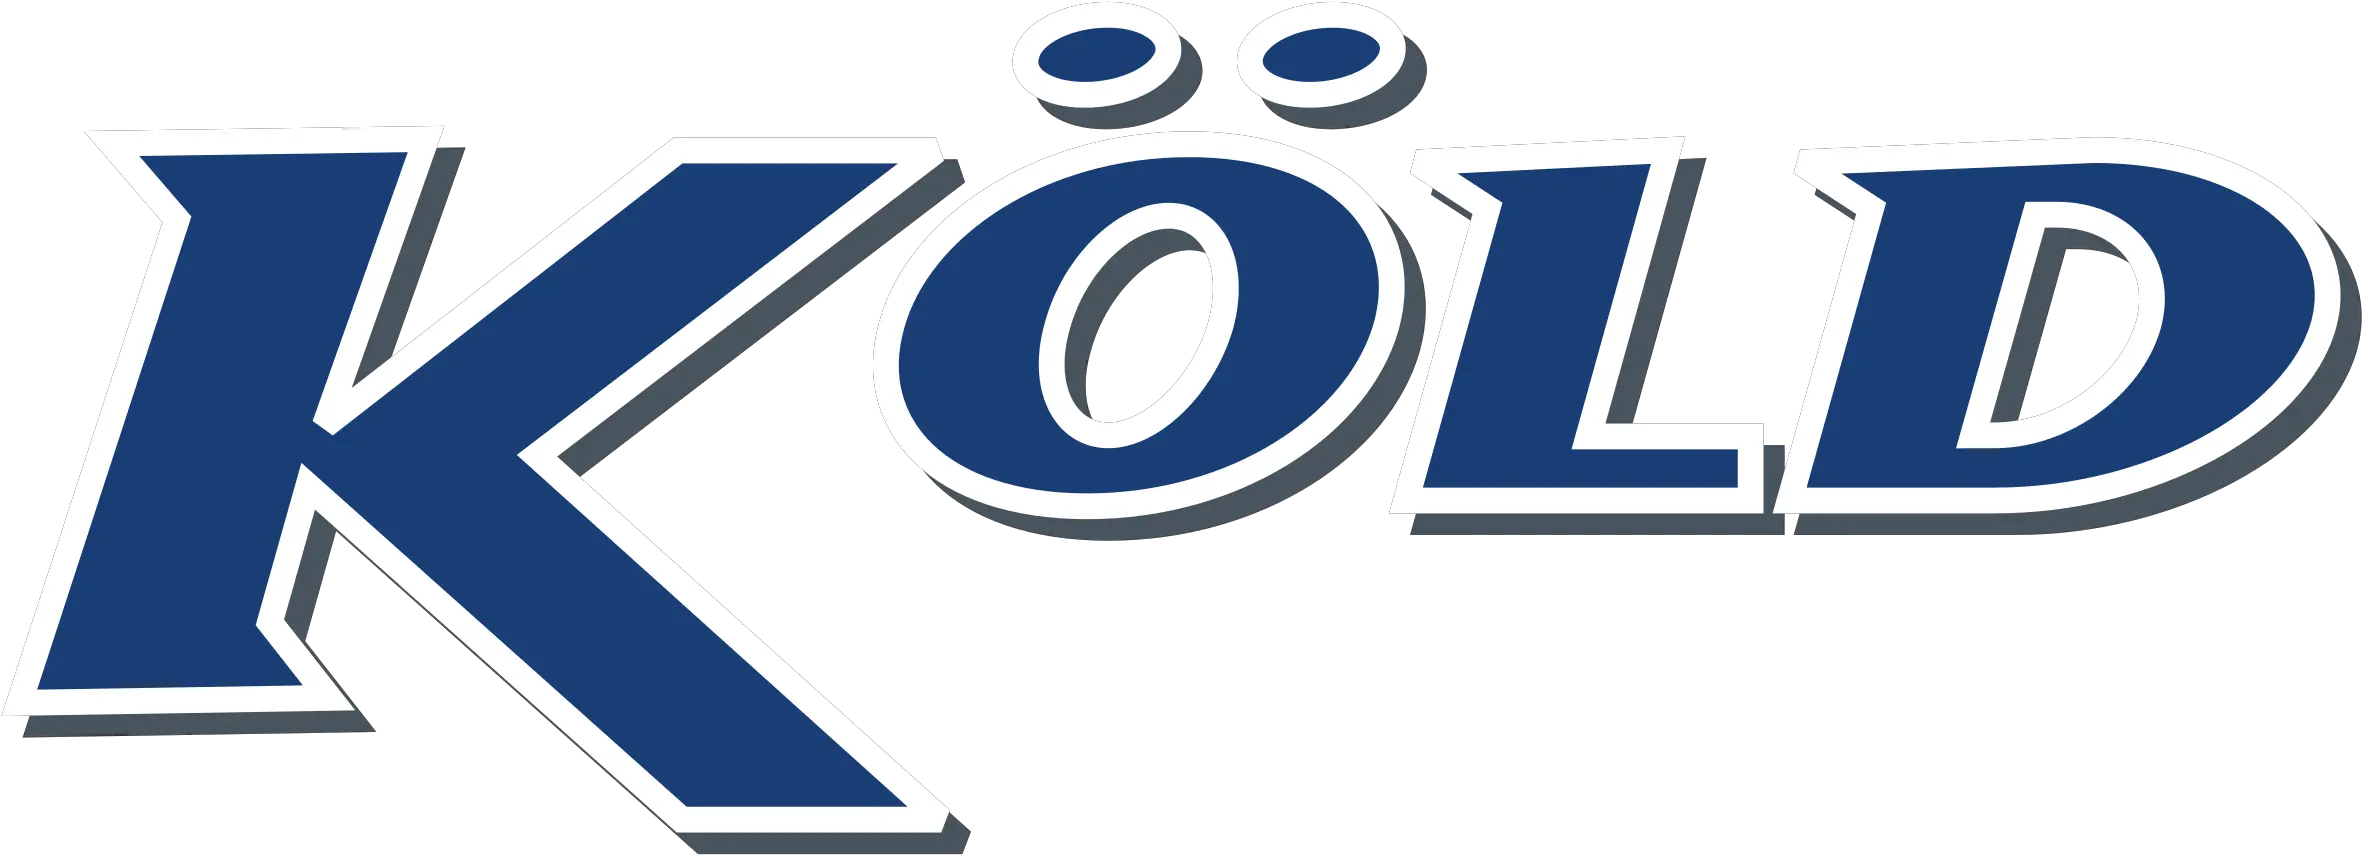 Kold Logo Png Transparent Svg Vector Dot Kumon Logo